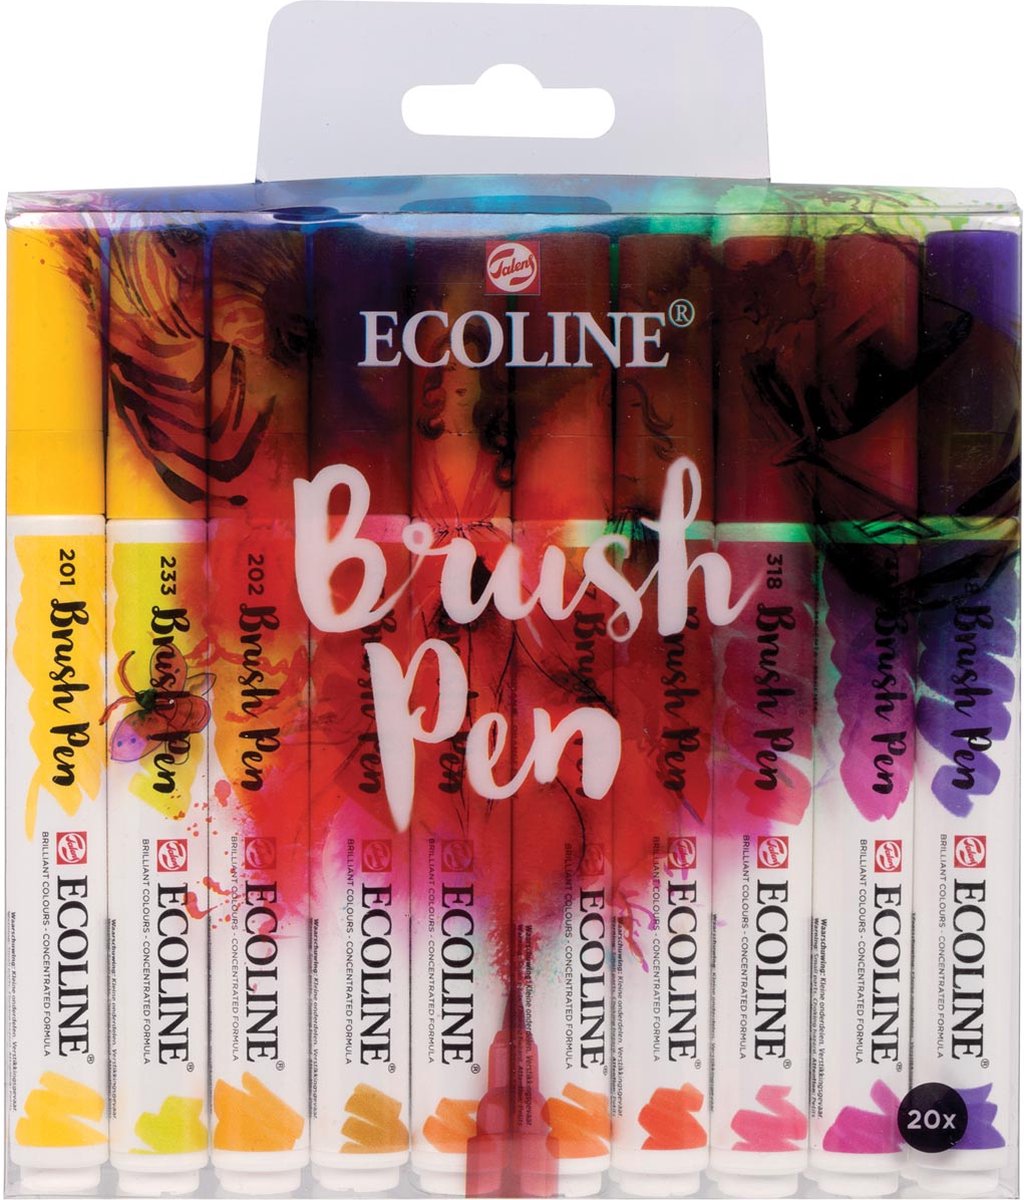 Talens Ecoline Brush pen, etui met 20 stuks in geassorteerde kleuren 3 stuks